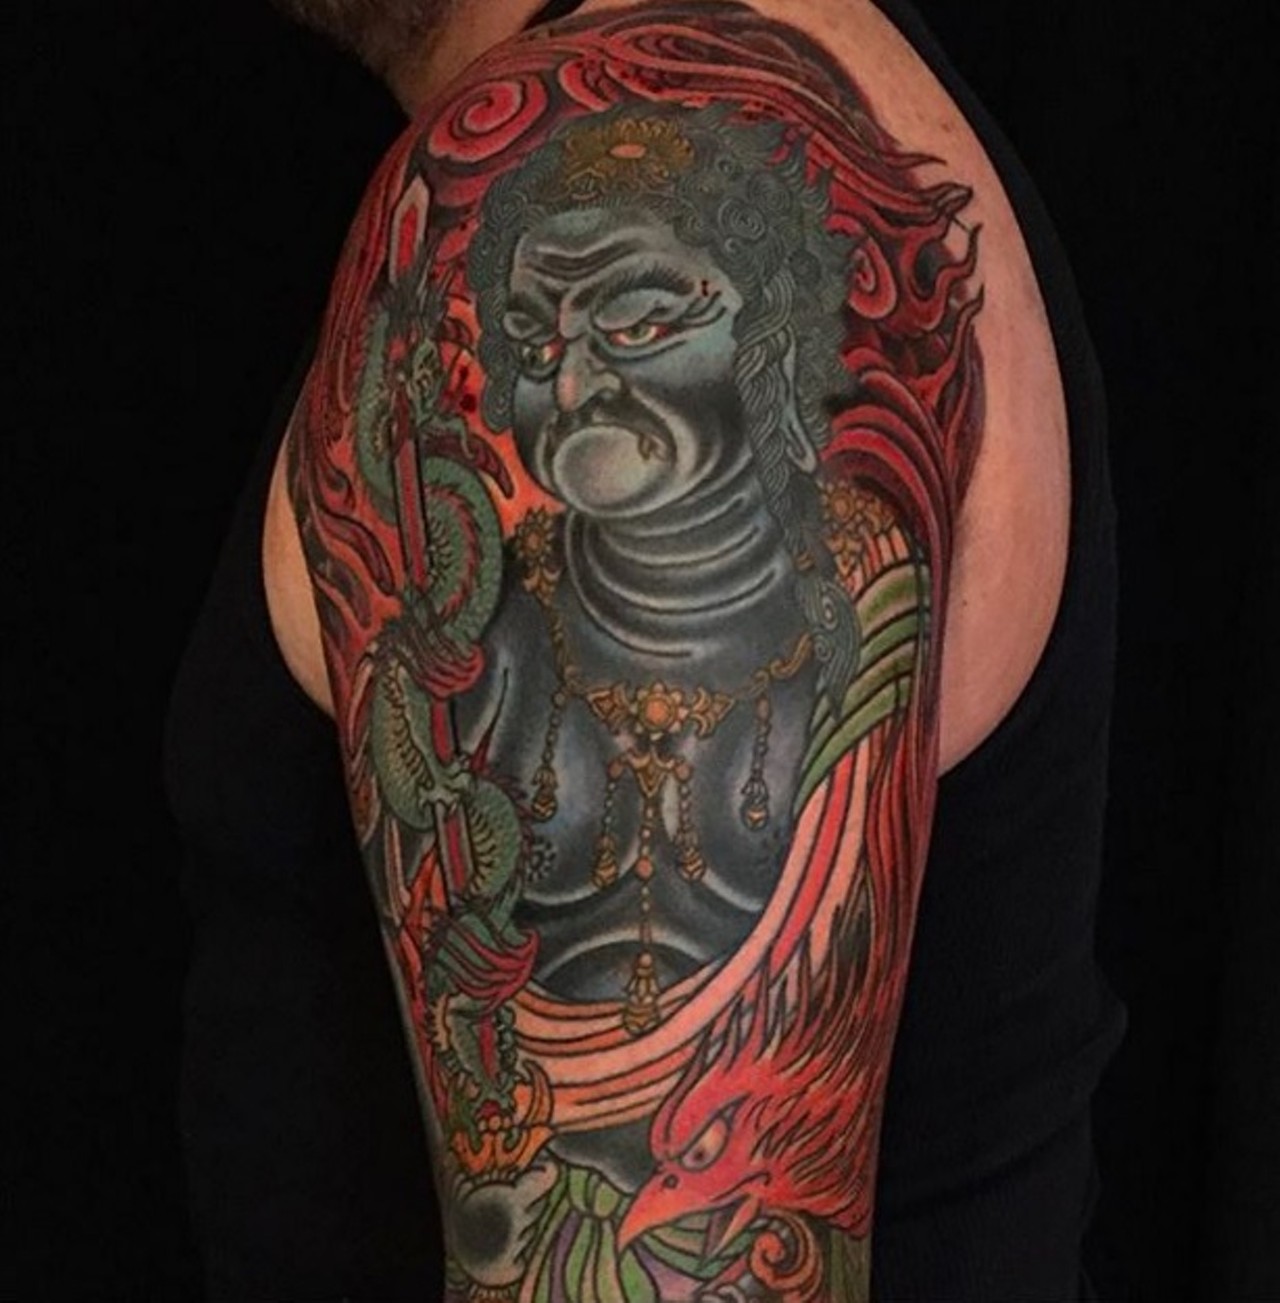 Brad Fink -- bradfink
Iron Age Tattoo
6309 Delmar Blvd, St. Louis, MO 63130
(314) 725-1499